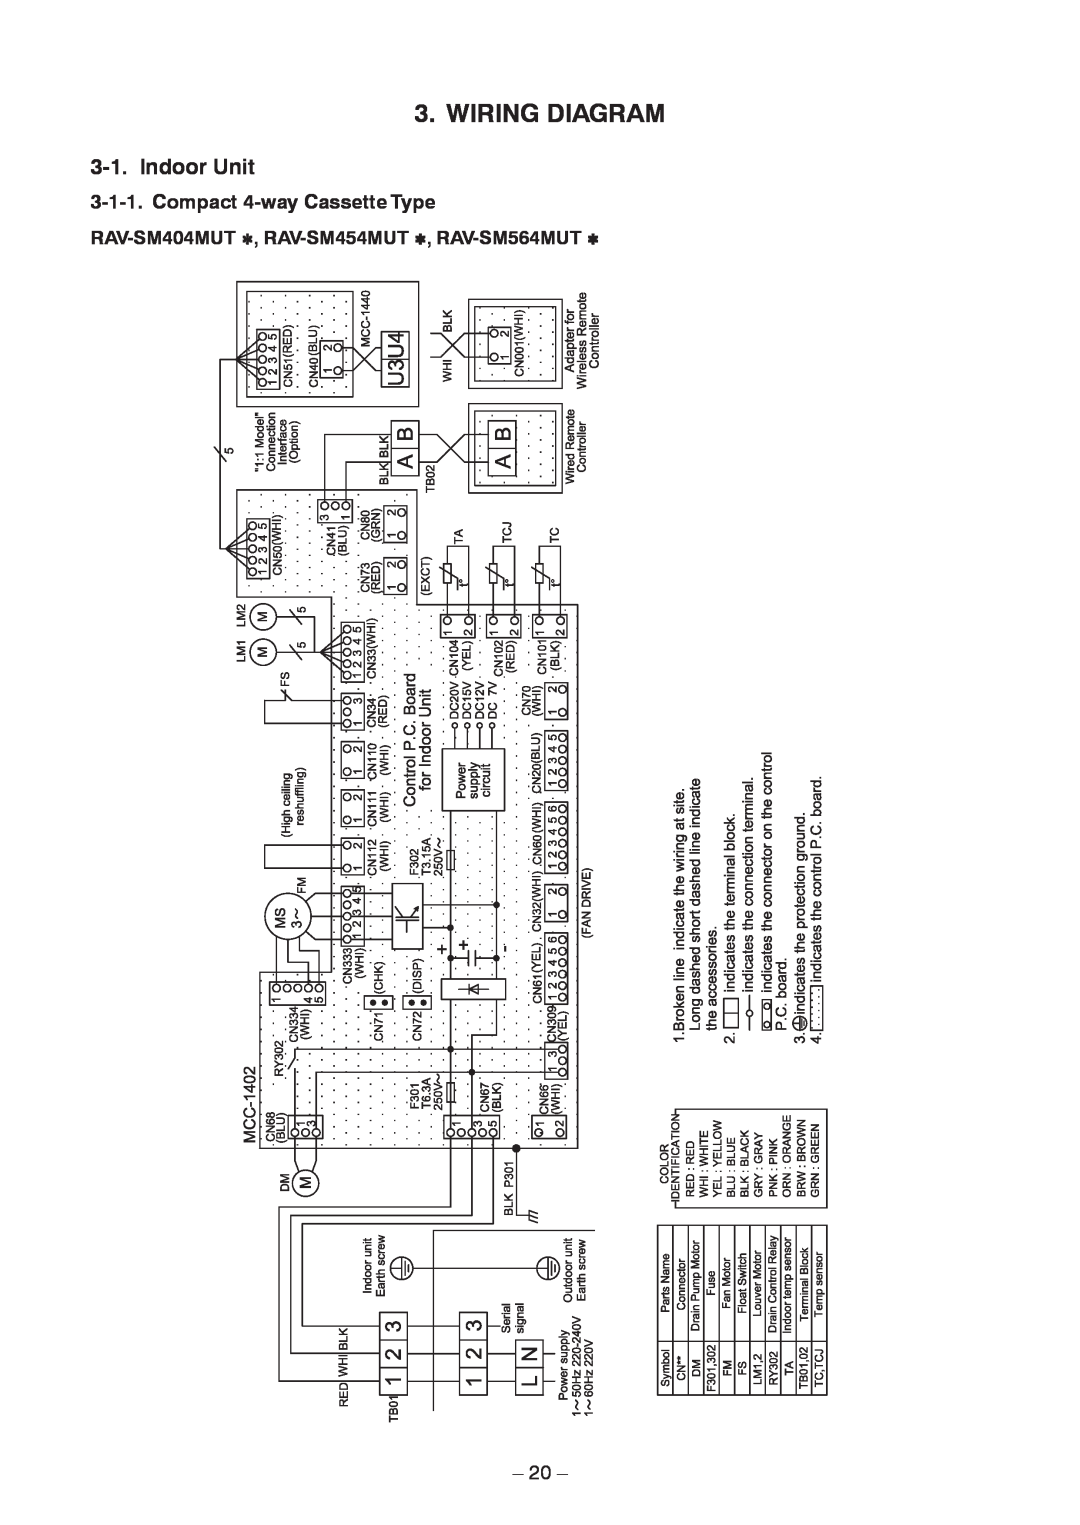 Toshiba RAV-SM804BT-E, RAV-SM454MUT-E, RAV-SM404MUT-TR Wiring Diagram, Indoor Unit, Compact 4-wayCassette Type, 20 